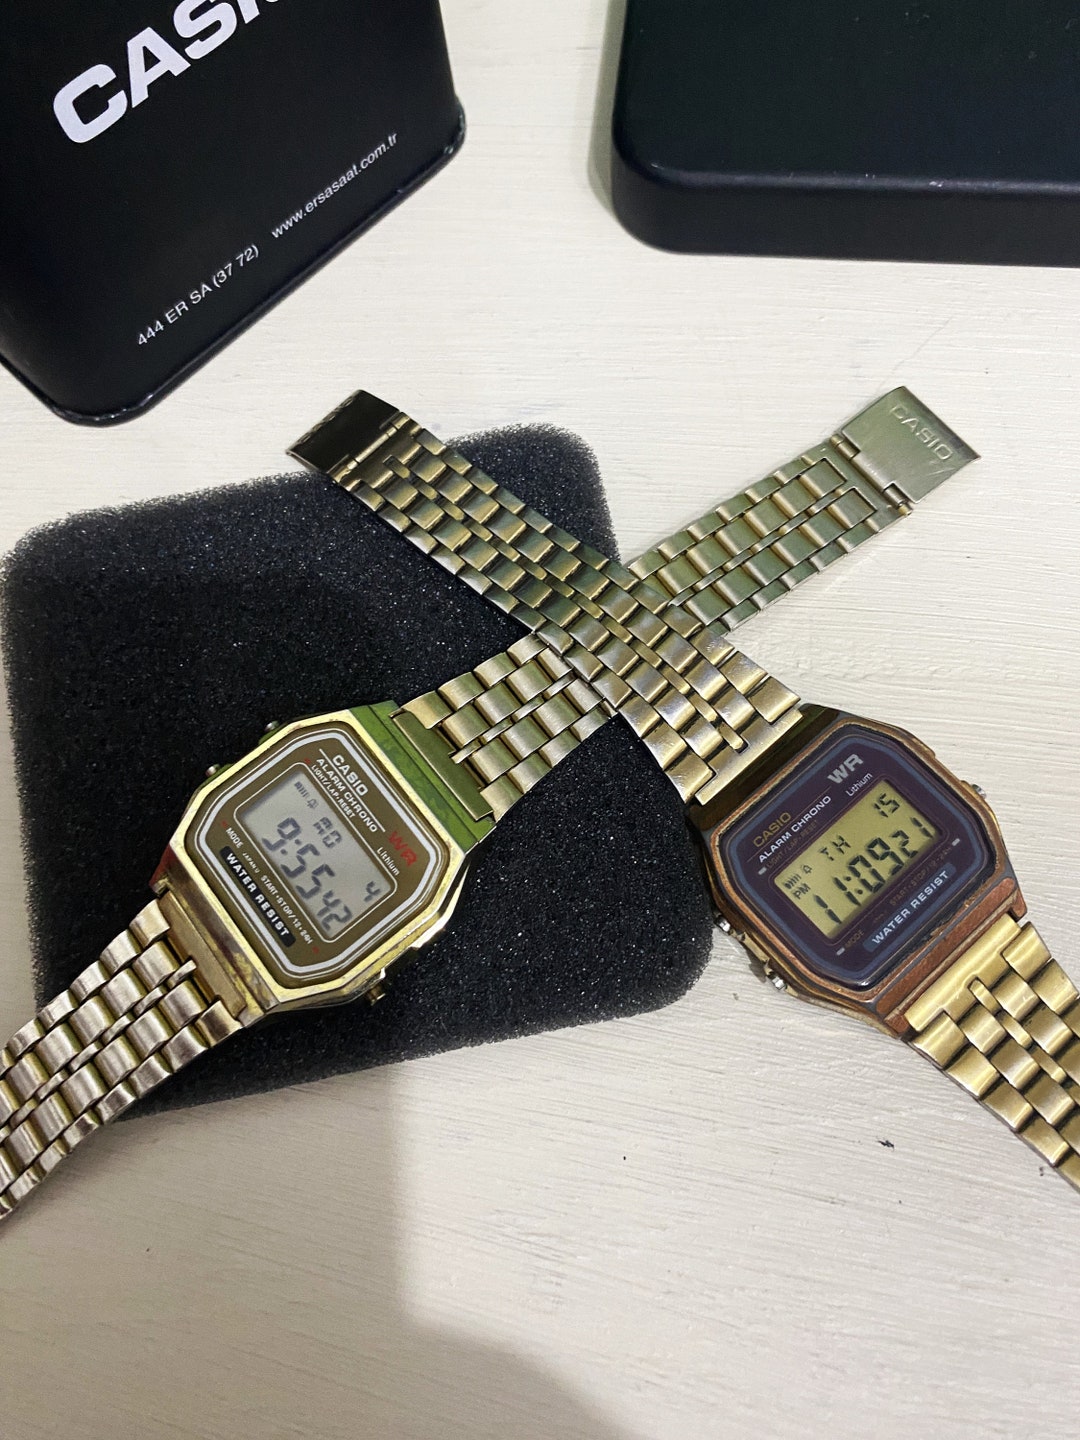 reloj Casio Retro Vintage unisex hombre y mujer varios colores digital  watch A159 WR F91W